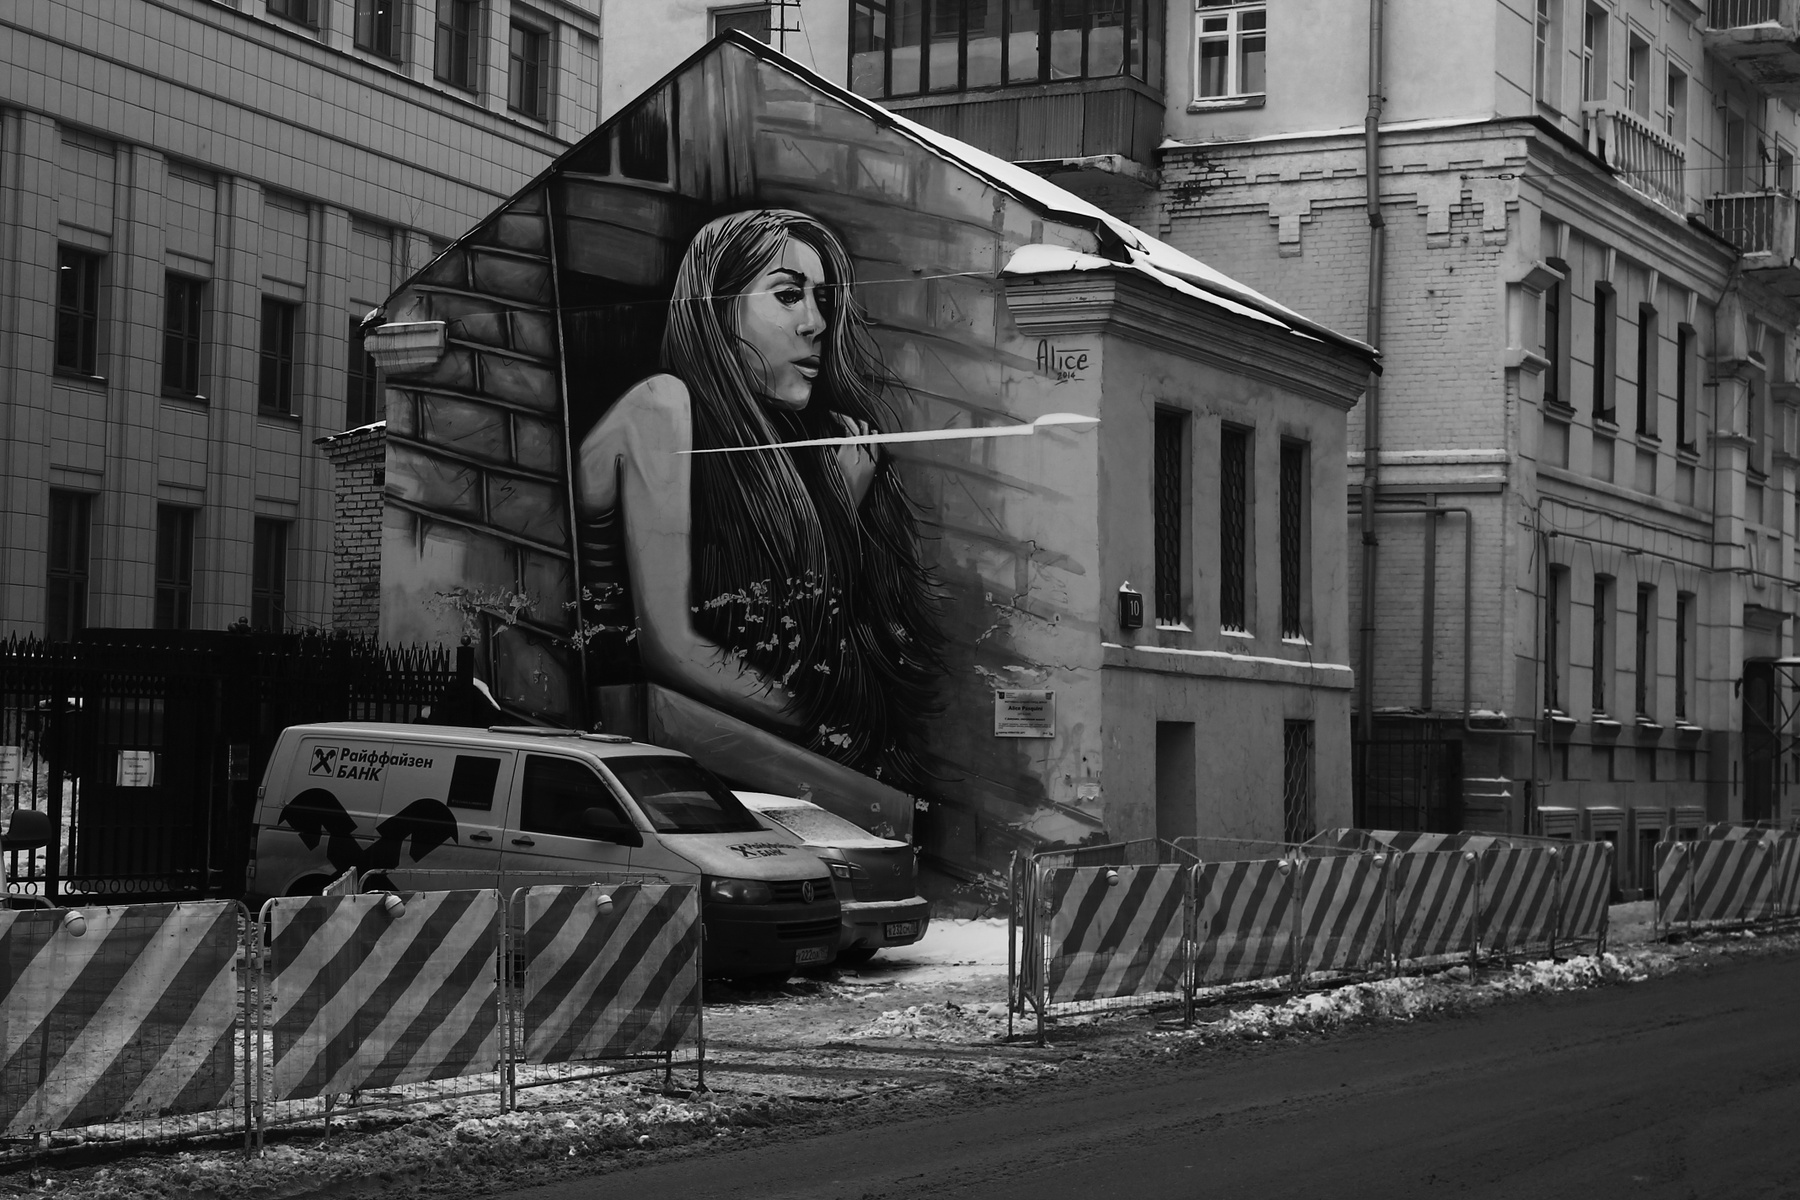 Глазовский переулок Москва